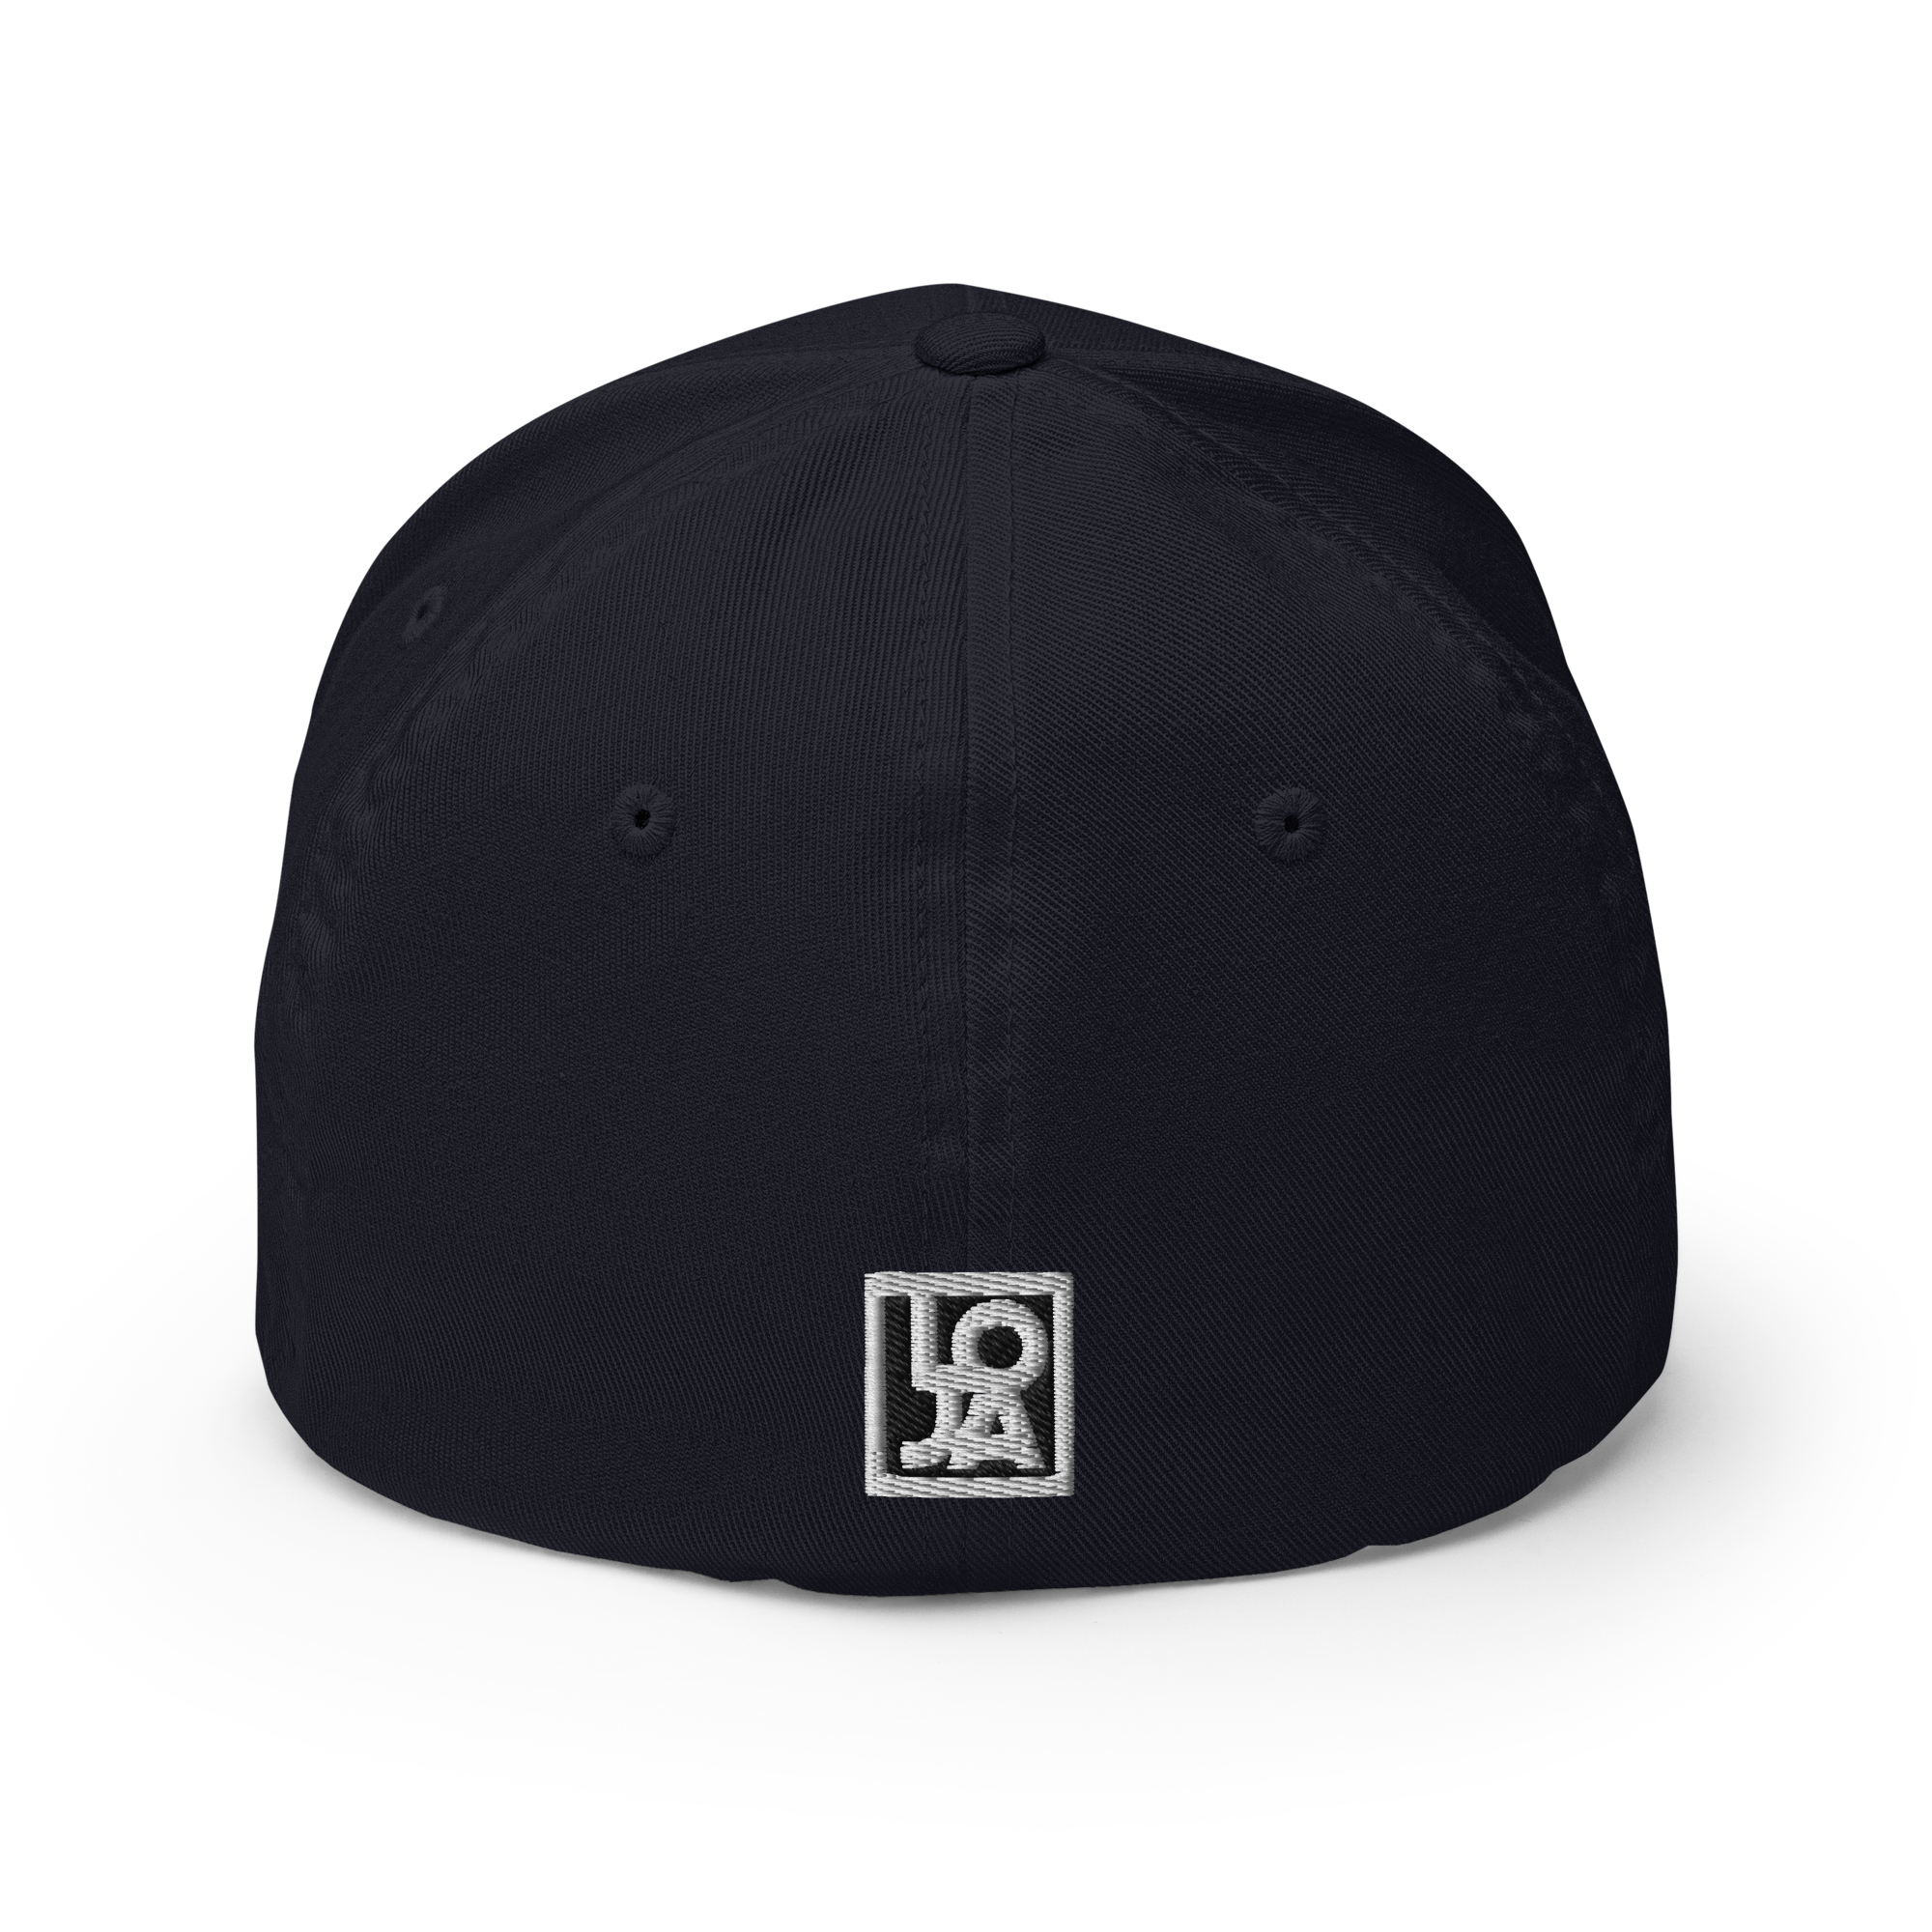 LOJ Wingz Logo Design Structured Twill Cap